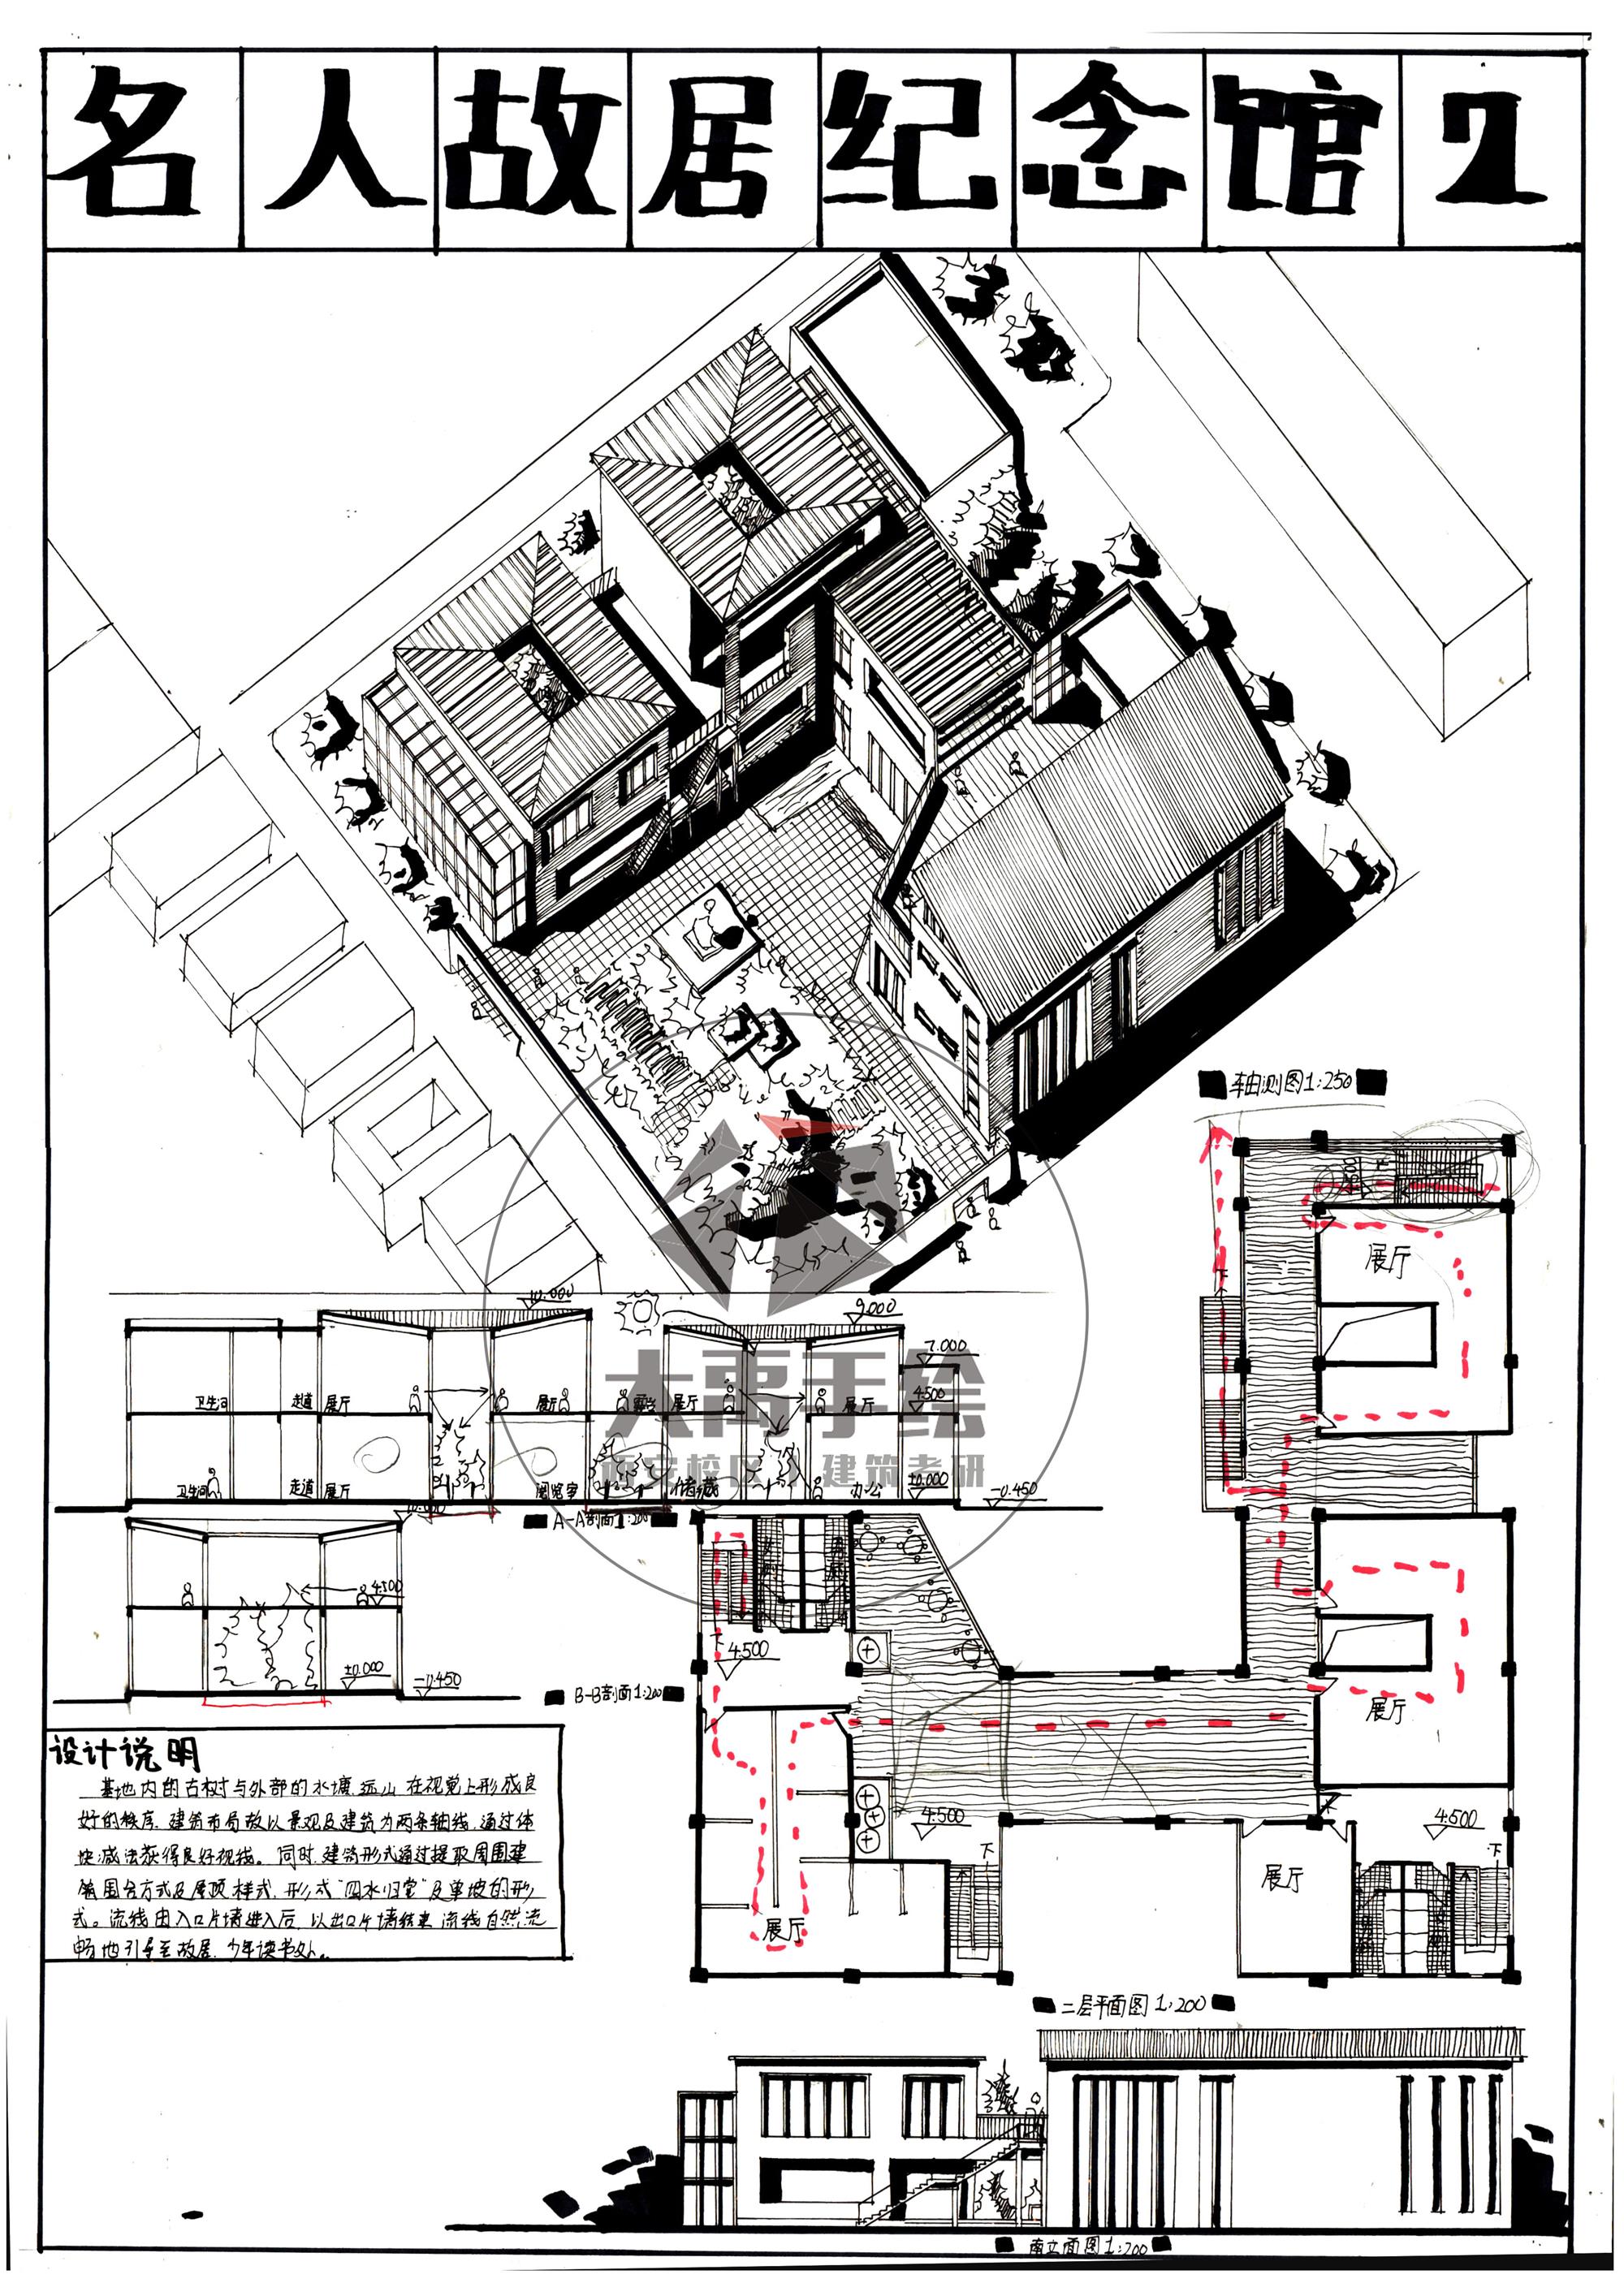 今日分享一:名人故居纪念馆设计--大禹手绘2020寒假班建筑快题作品